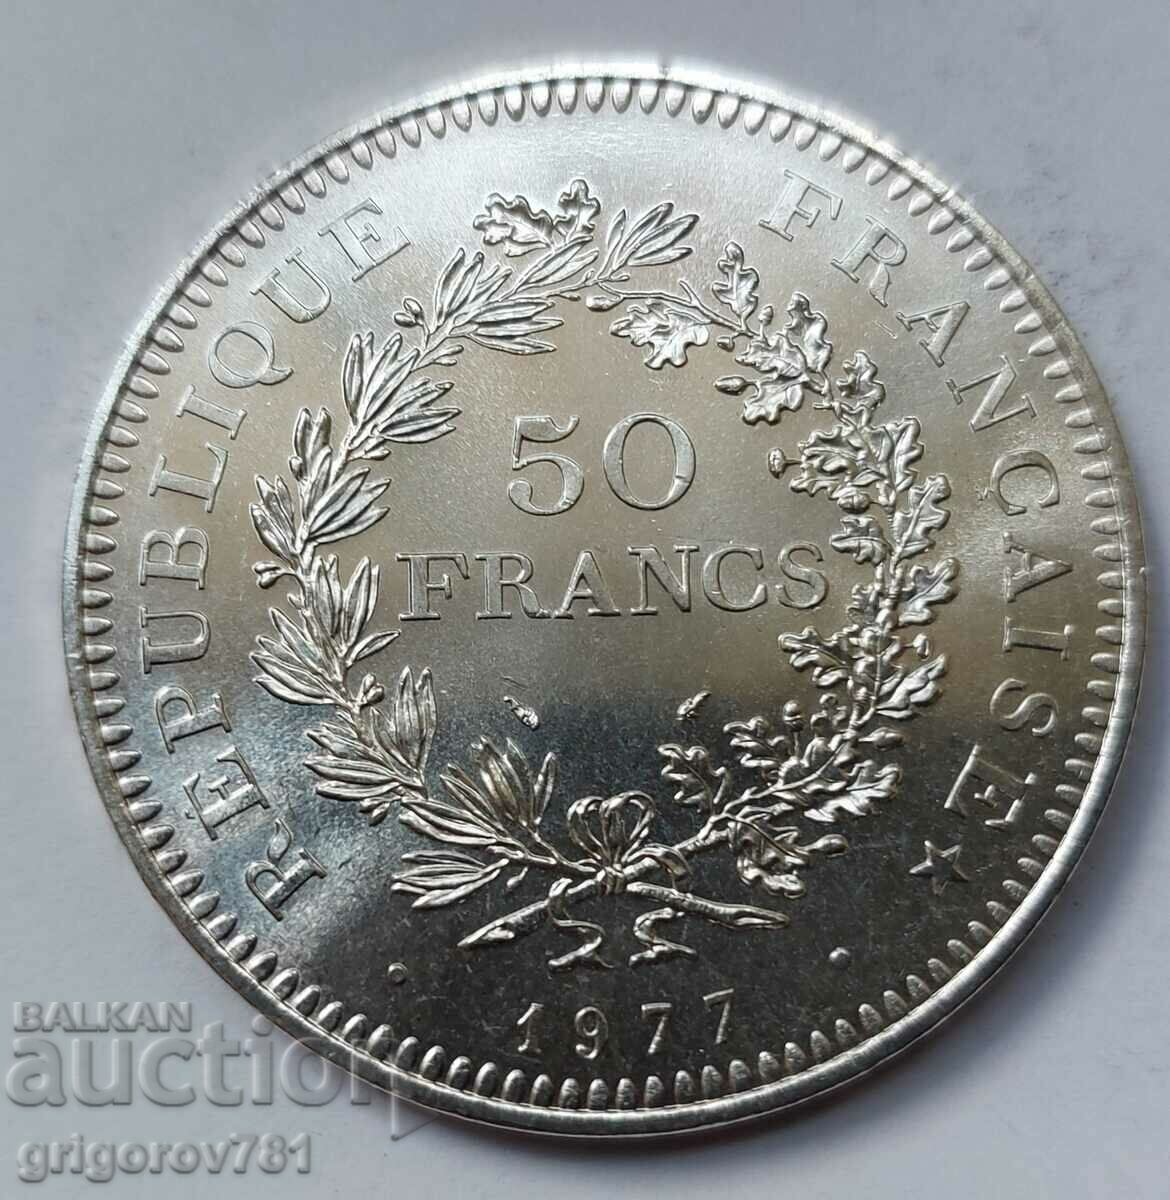 Ασήμι 50 φράγκων Γαλλία 1977 - Ασημένιο νόμισμα #45